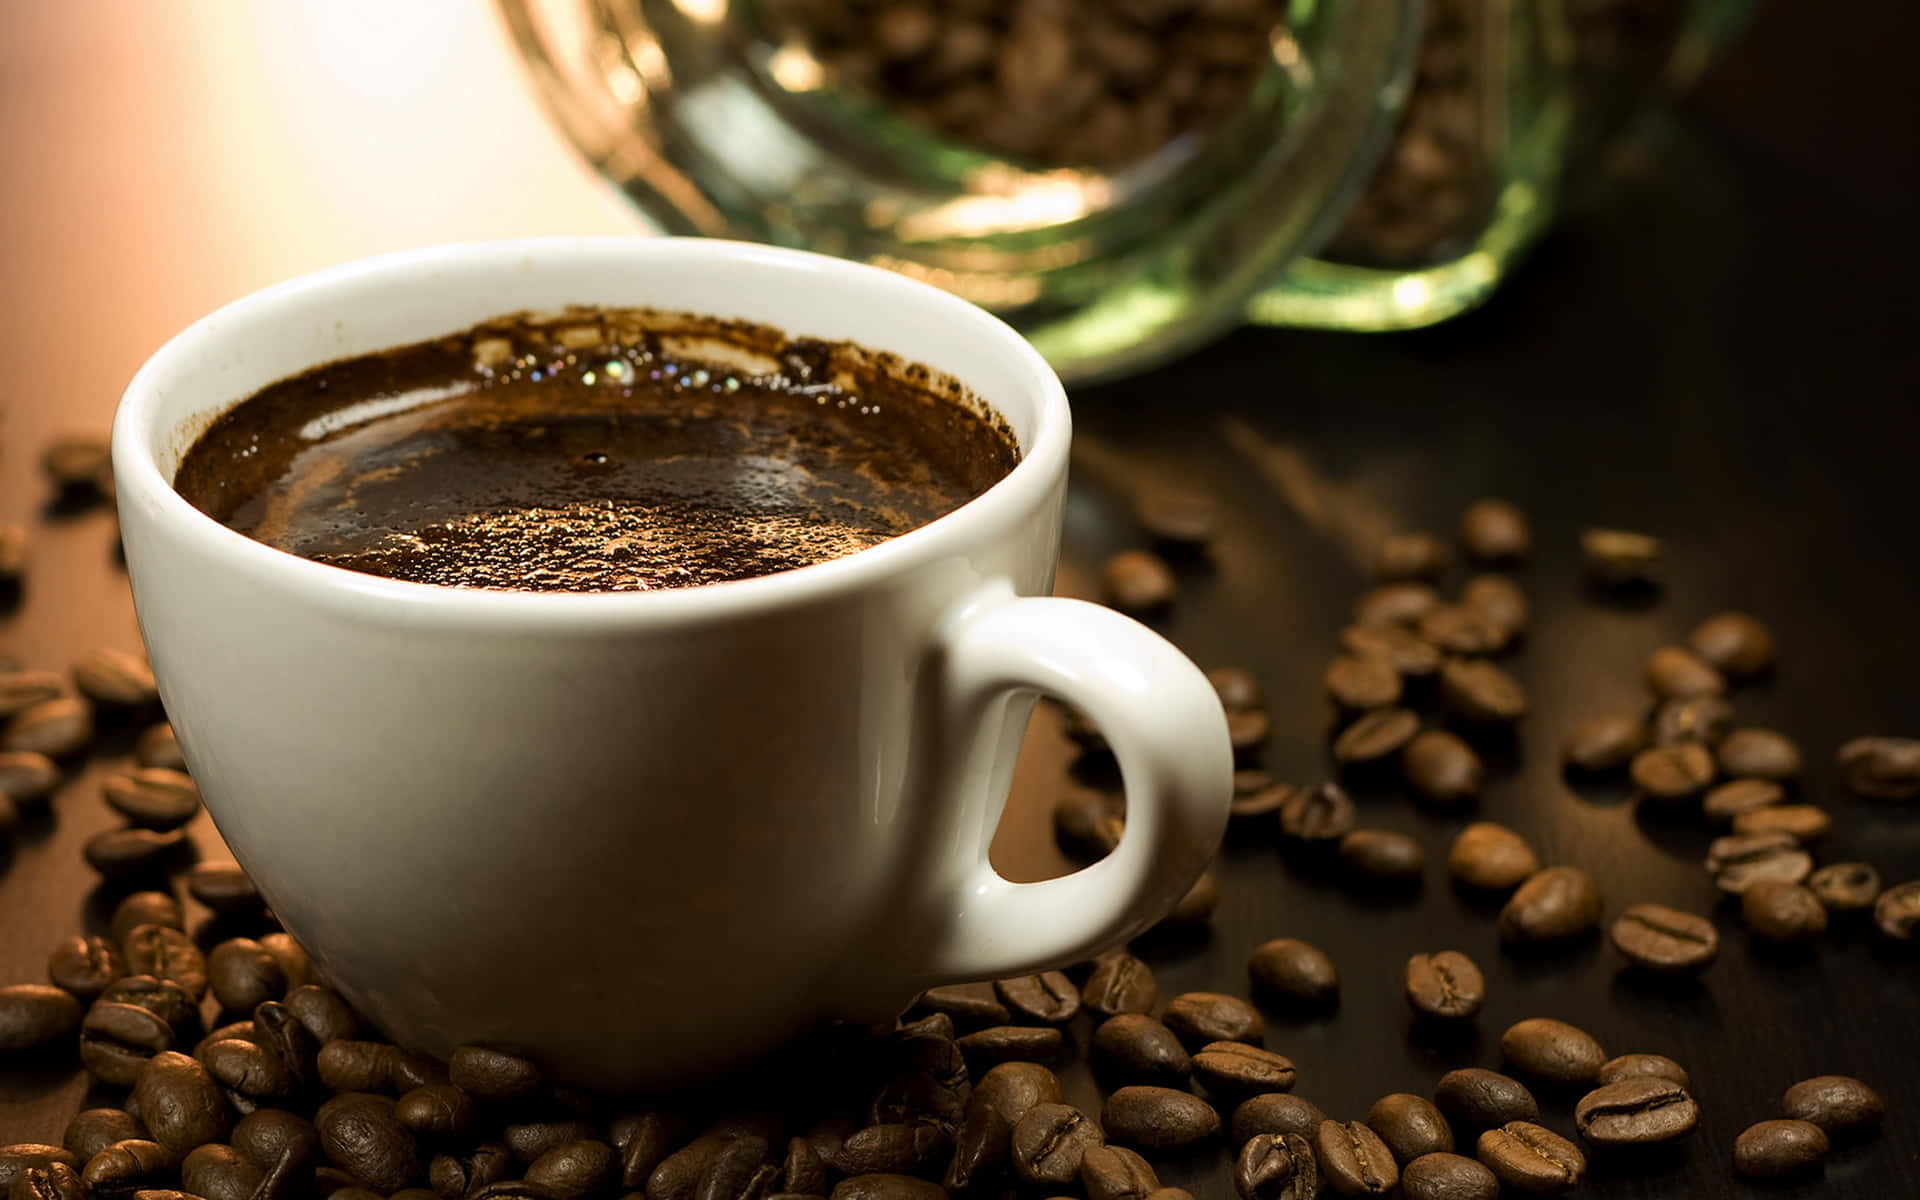 Billeder af kaffe afbilder en dejlig cappuccino-drik.